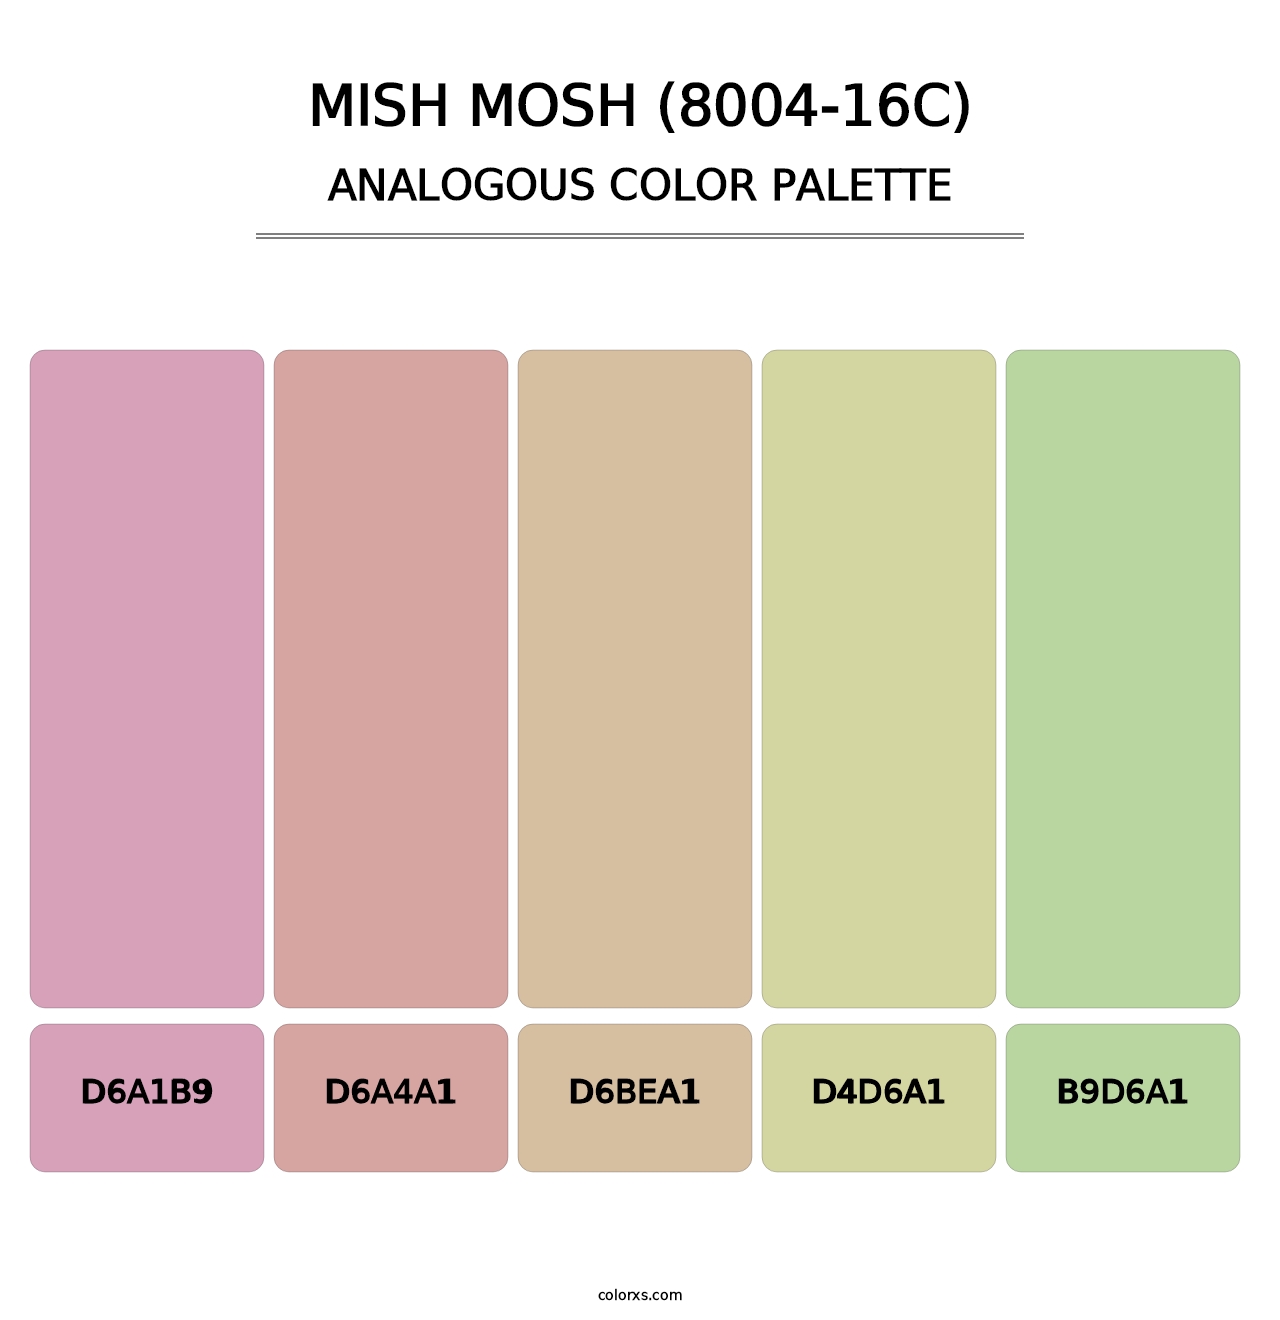 Mish Mosh (8004-16C) - Analogous Color Palette